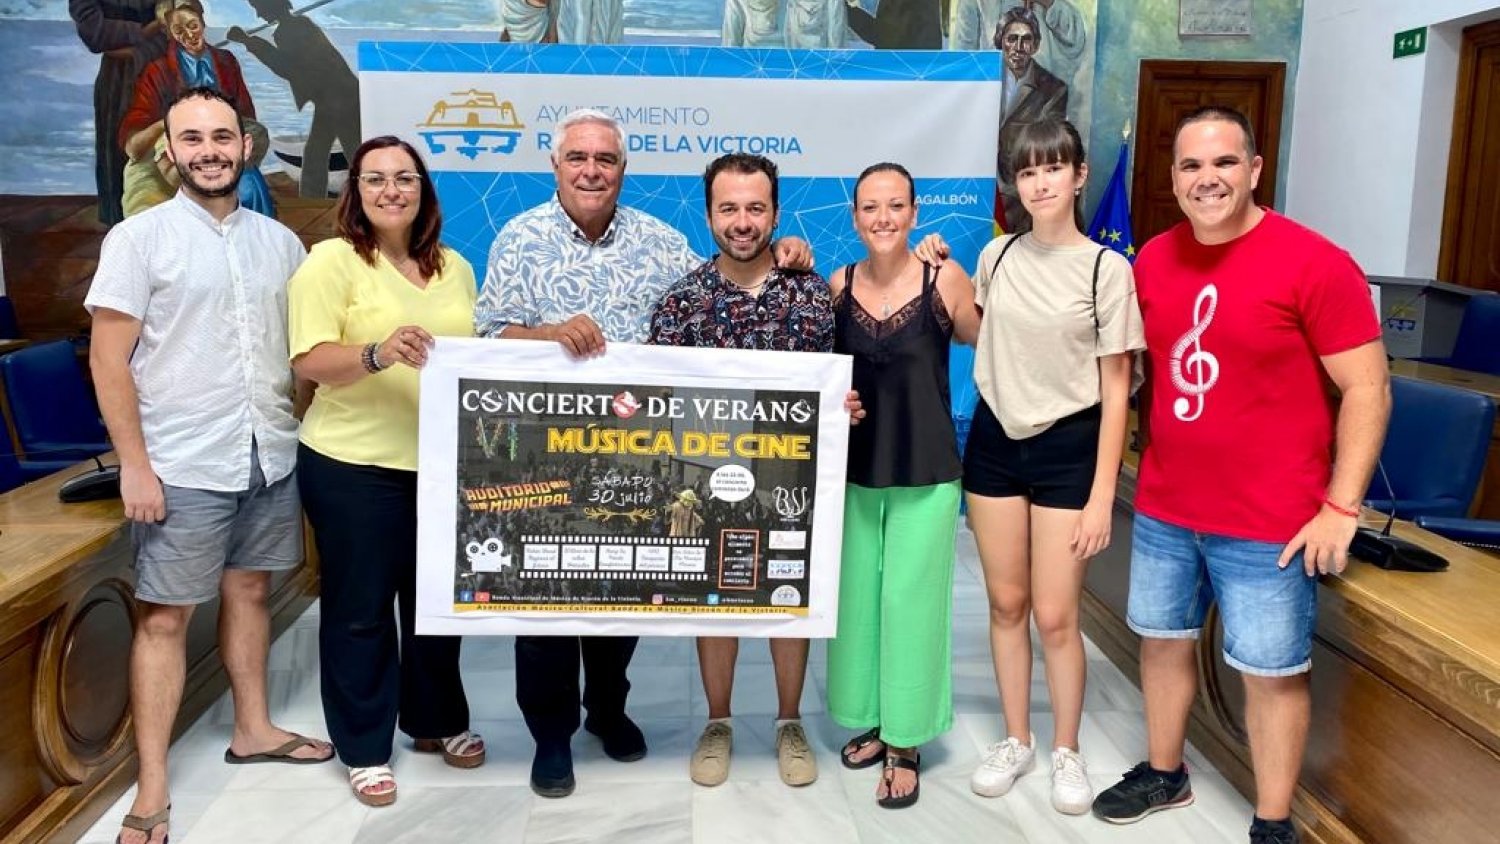 Rincón de la Victoria celebra el VI Concierto de Verano de Música de Cine a beneficio de la Asociación Músico-Cultural